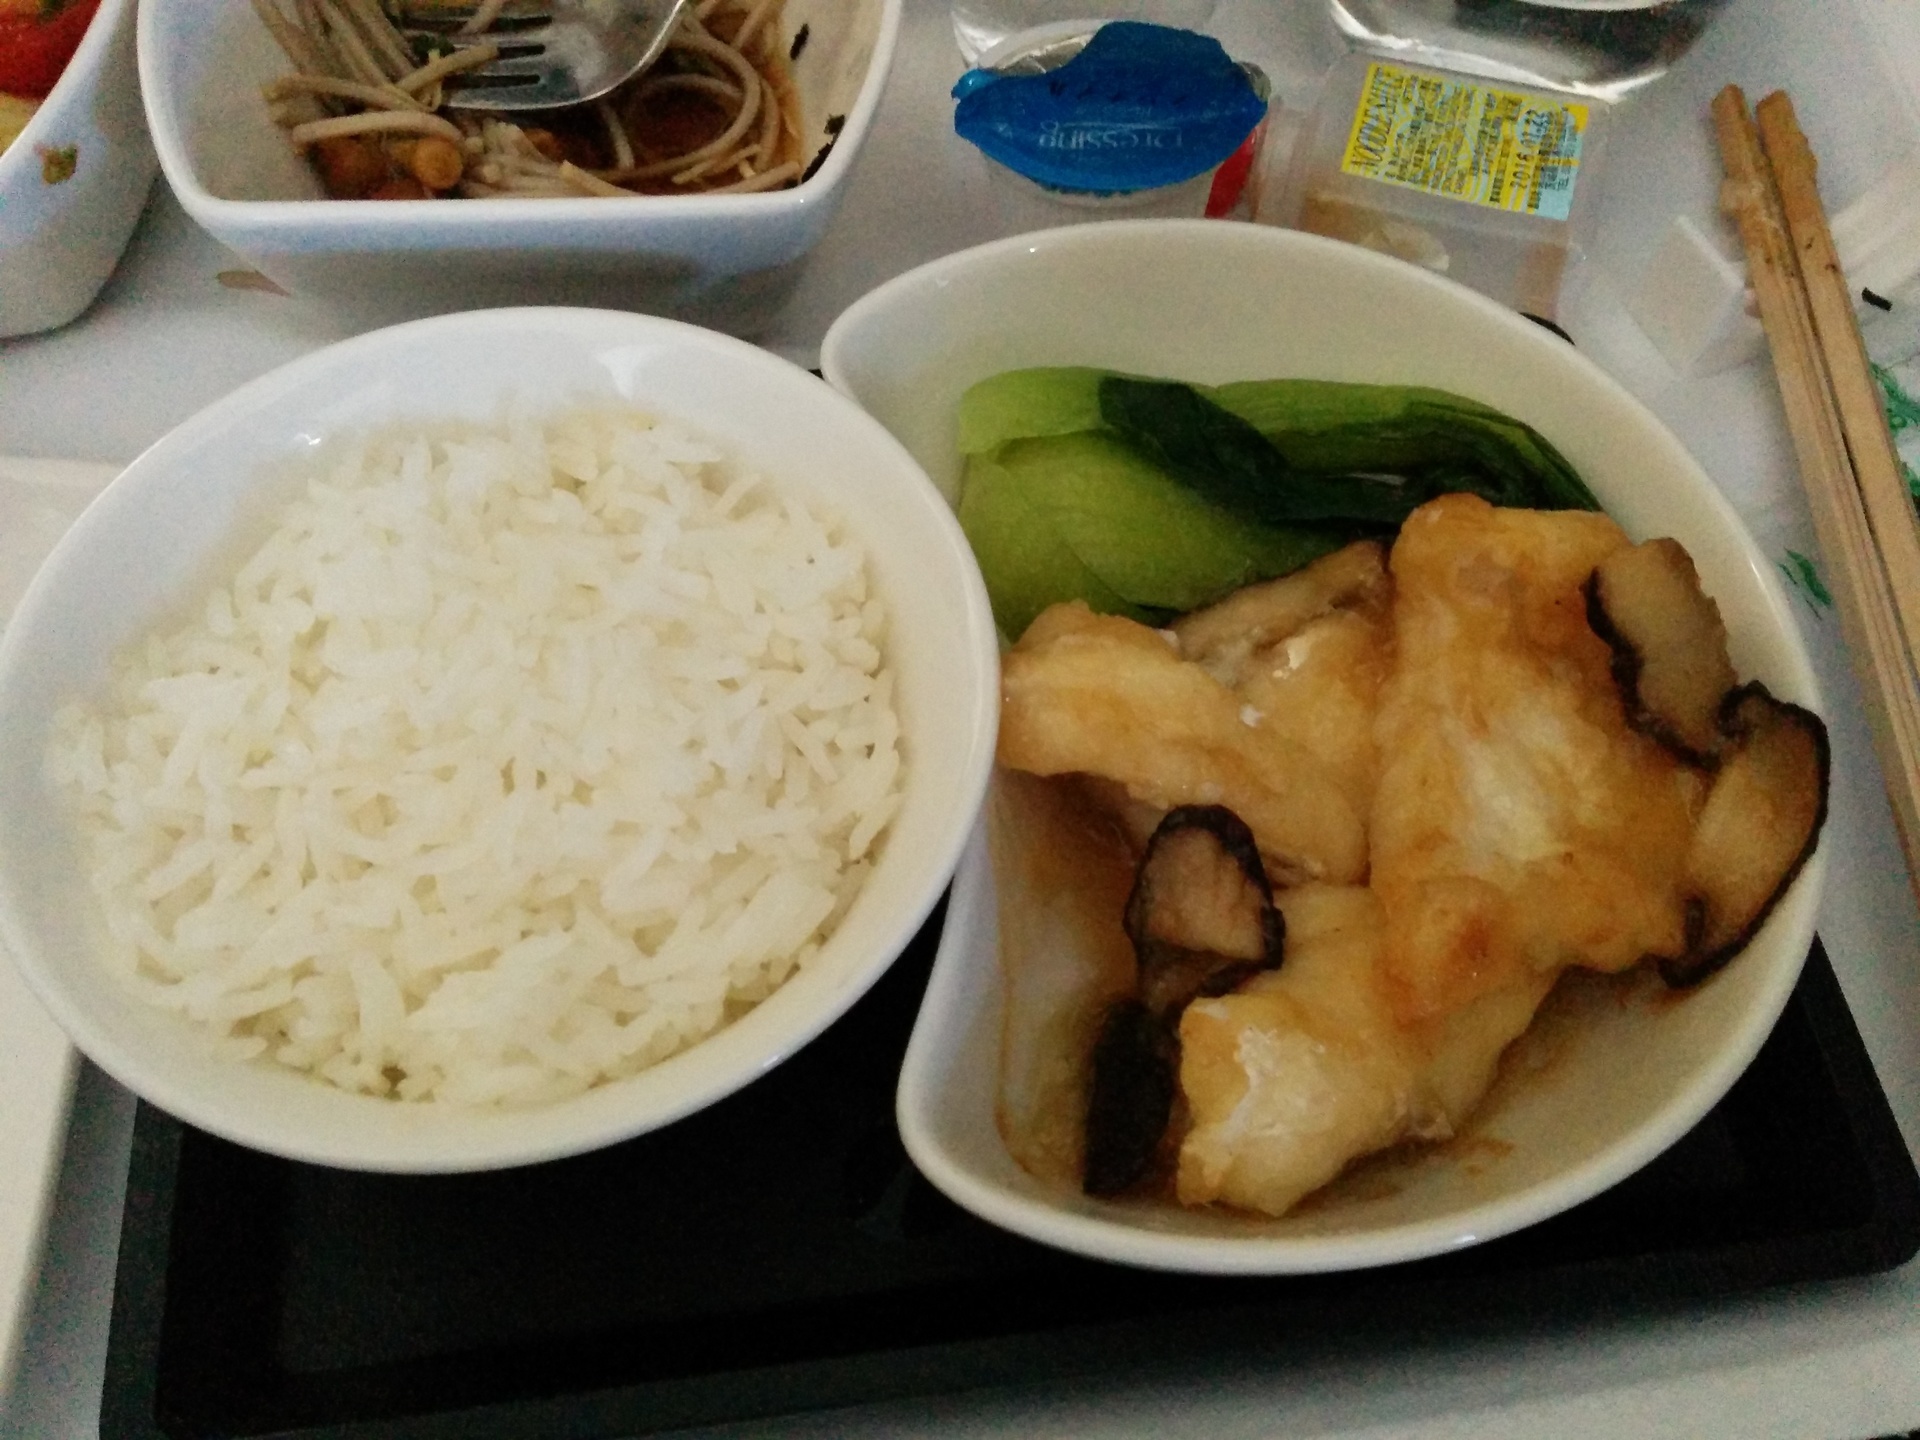 キャセイパシフィック航空 東京 羽田 ー香港のビジネスクラス機内食 Anaカードの使い方からマイレージの裏技まで マイラーブログ